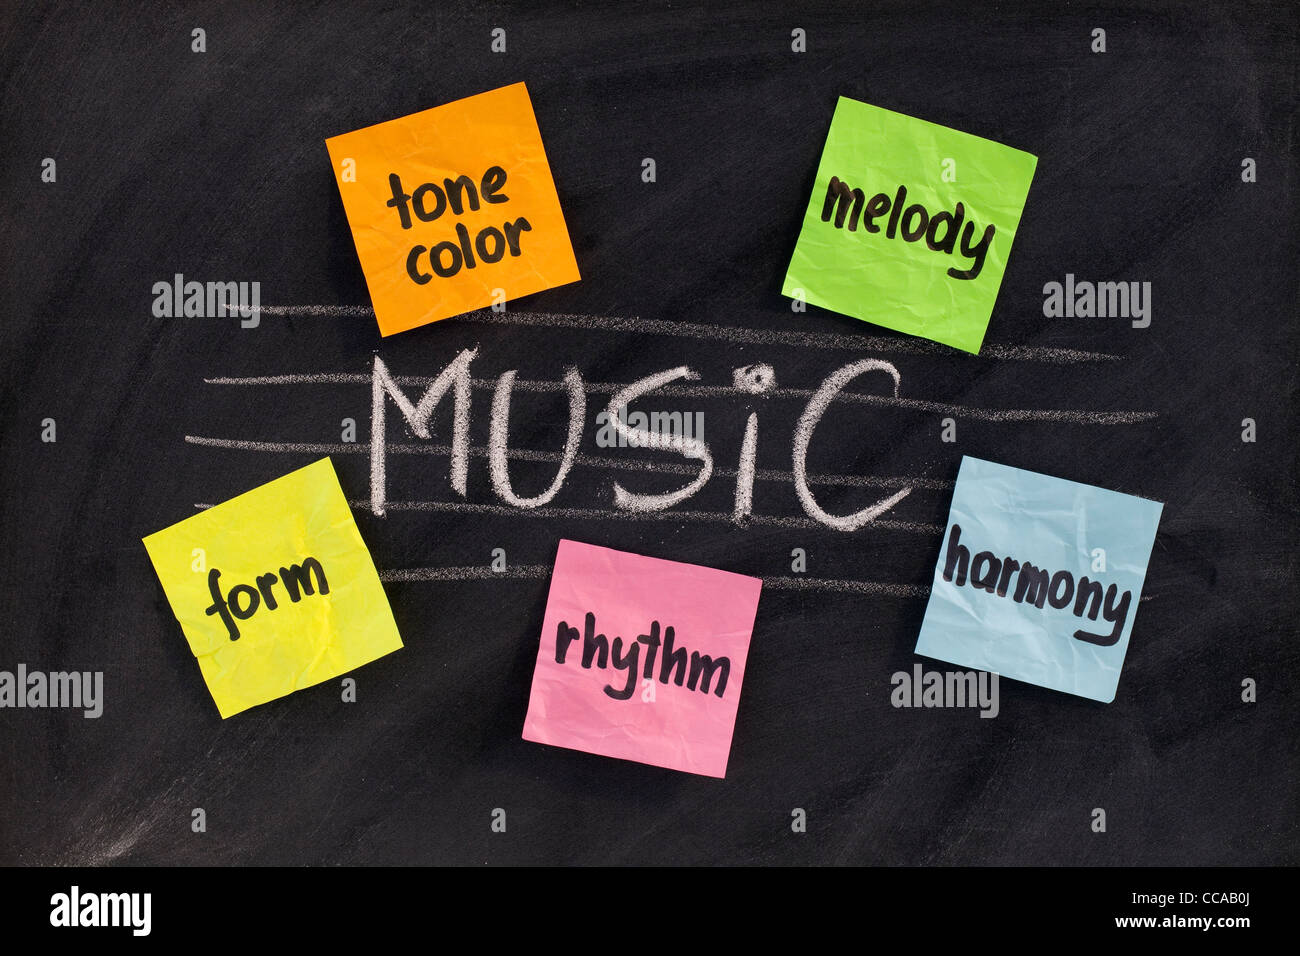 traditionelle musikwissenschaftliche oder europäischen beeinflusst Aspekte der klassischen Musik (Harmonie, Melodie, Form, Rhythmus und Klangfarbe) Stockfoto